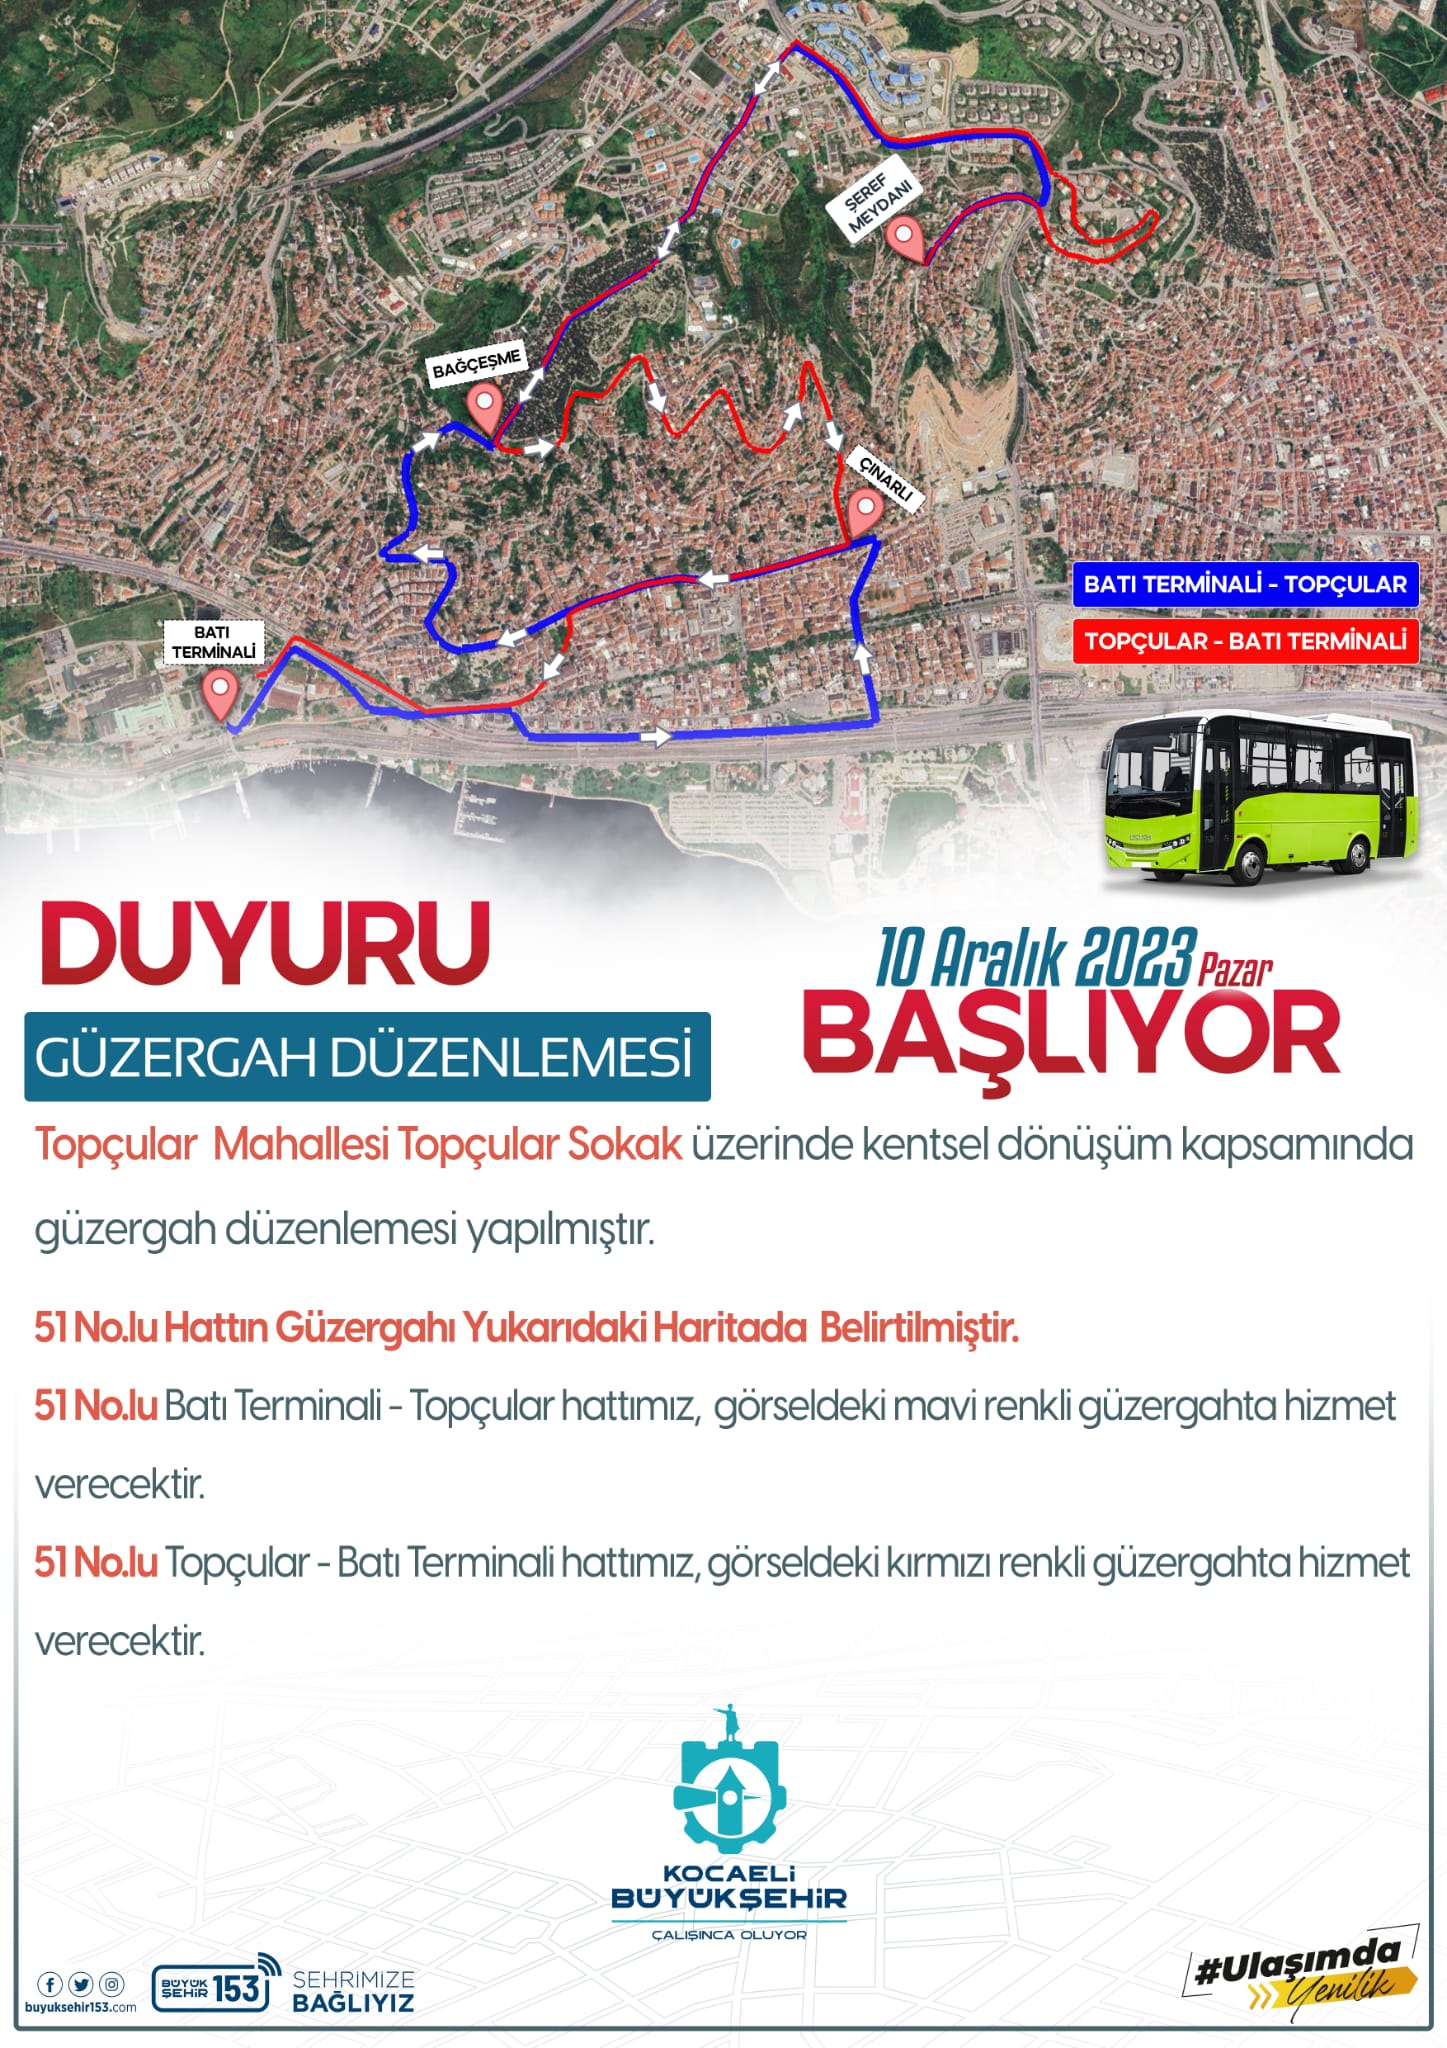 Kocaeli Büyükşehir Belediyesi duyurdu: Topçularda Güzergah değişikliği…